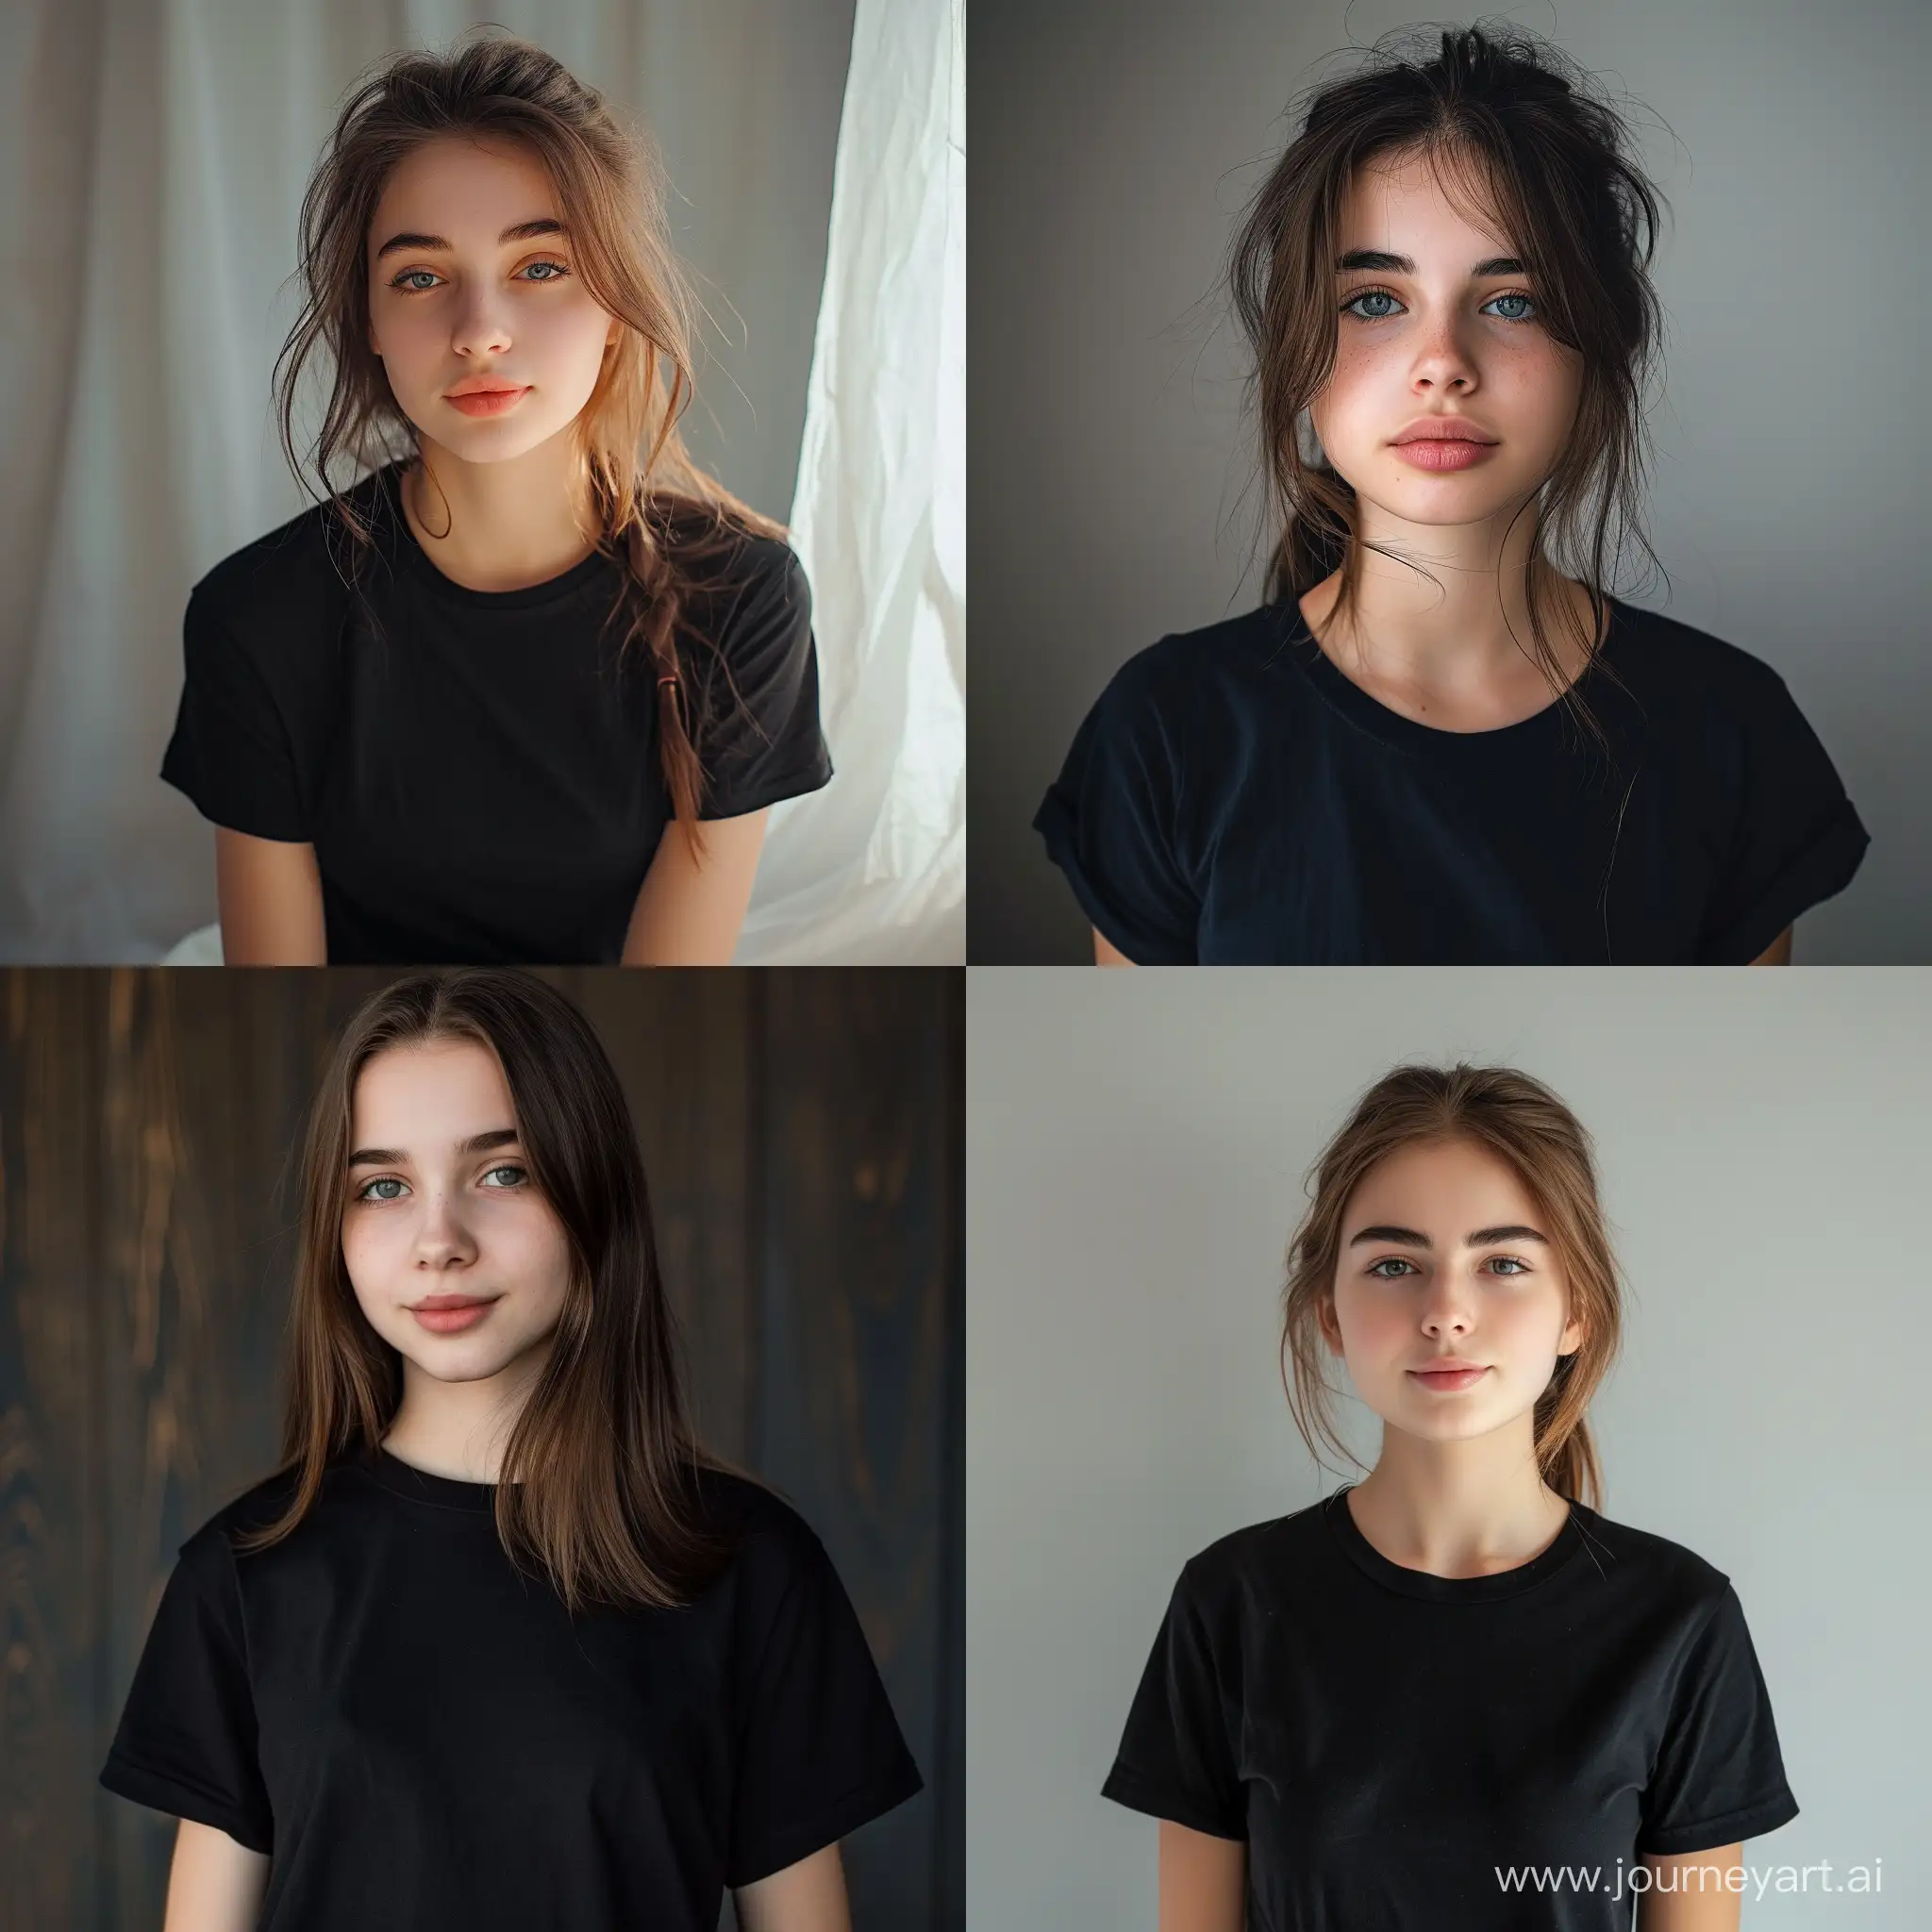 18 year old cute girl wearing black tshirt , potrait 